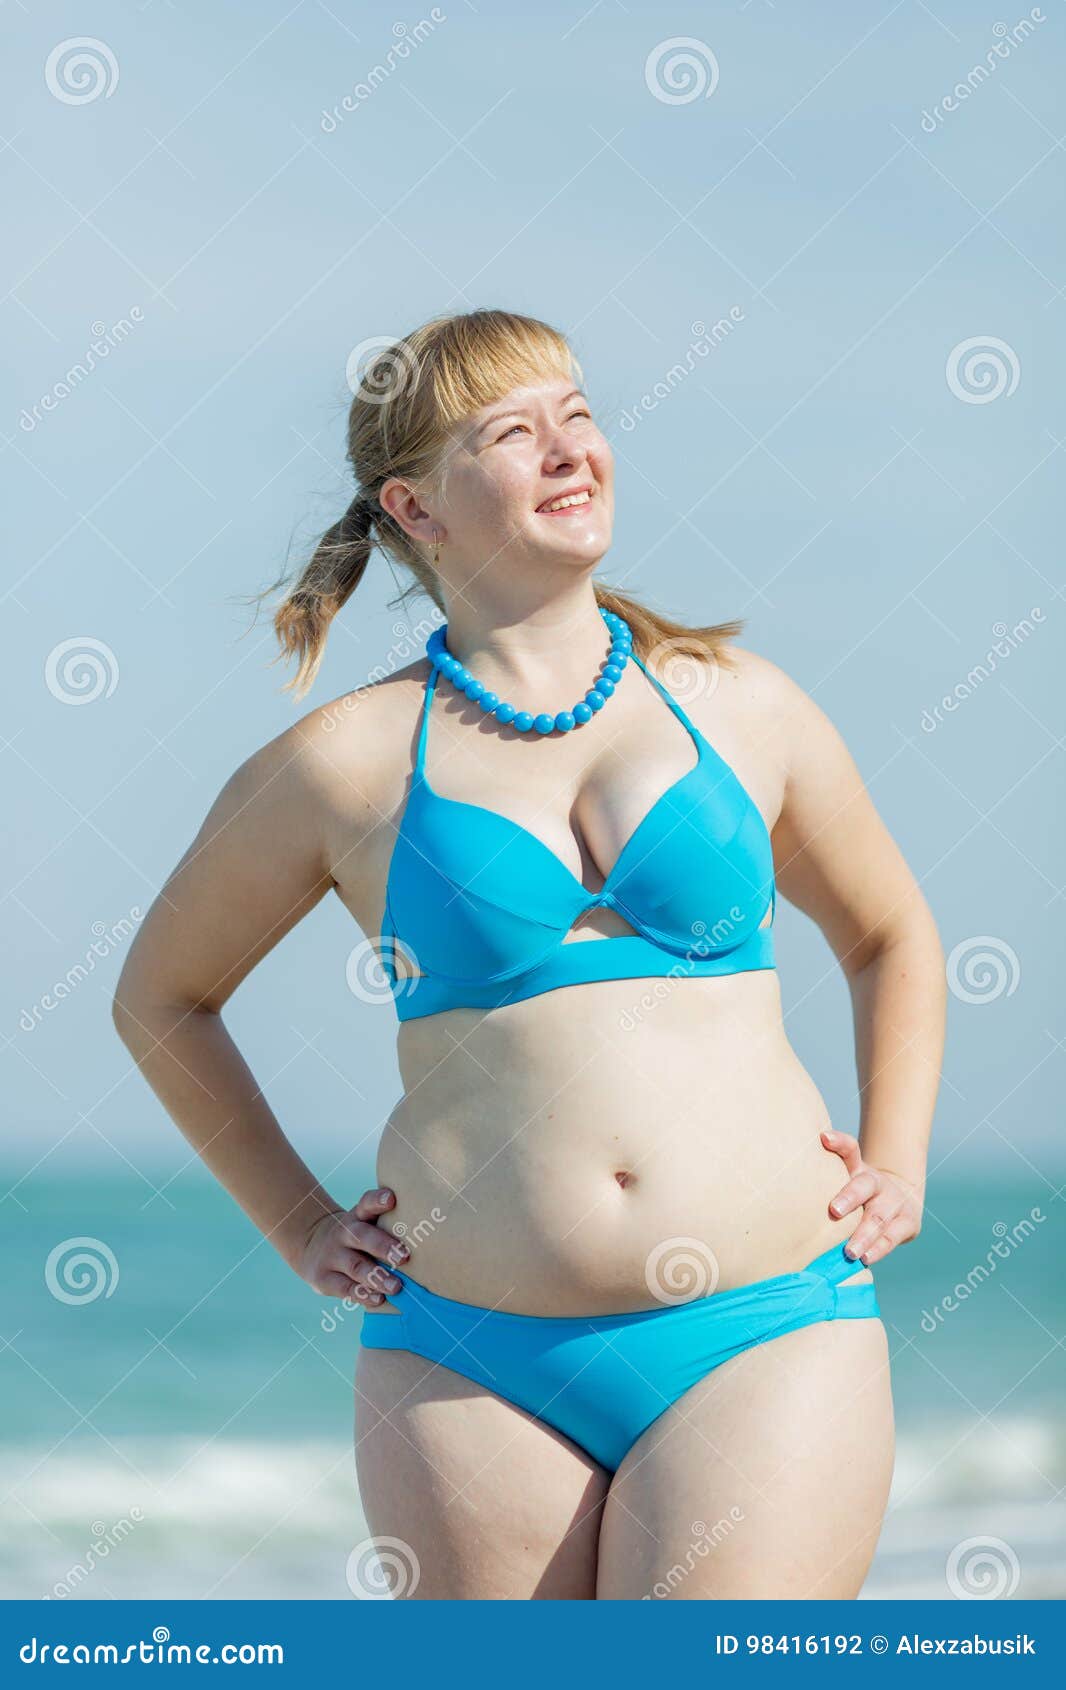 sexy amateur wife bikini